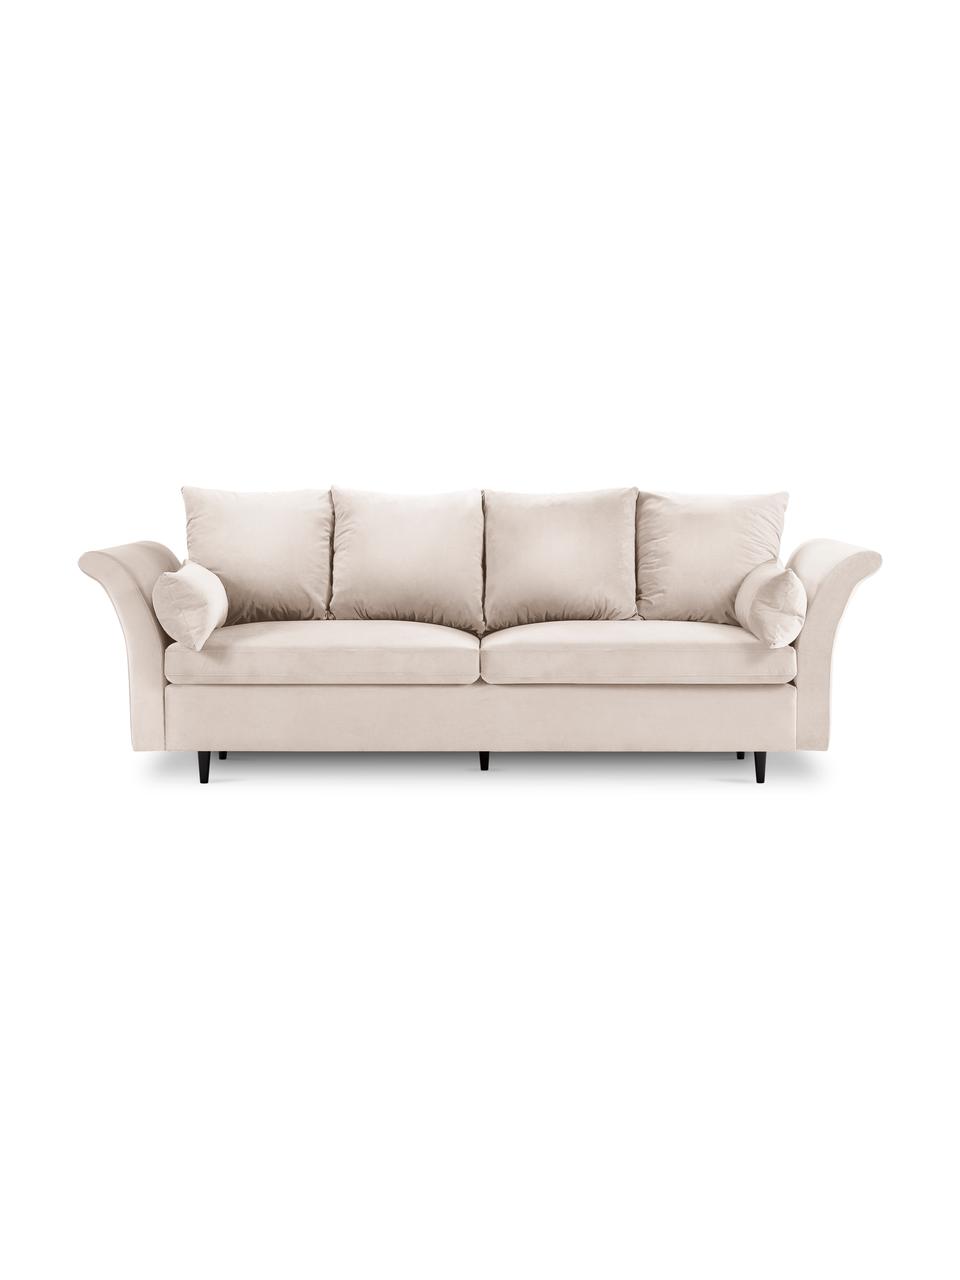 Sofa rozkładana z aksamitu z funkcją przechowywania Lola (3-osobowa), Nogi: drewno, Beżowy, S 245 x G 95 cm